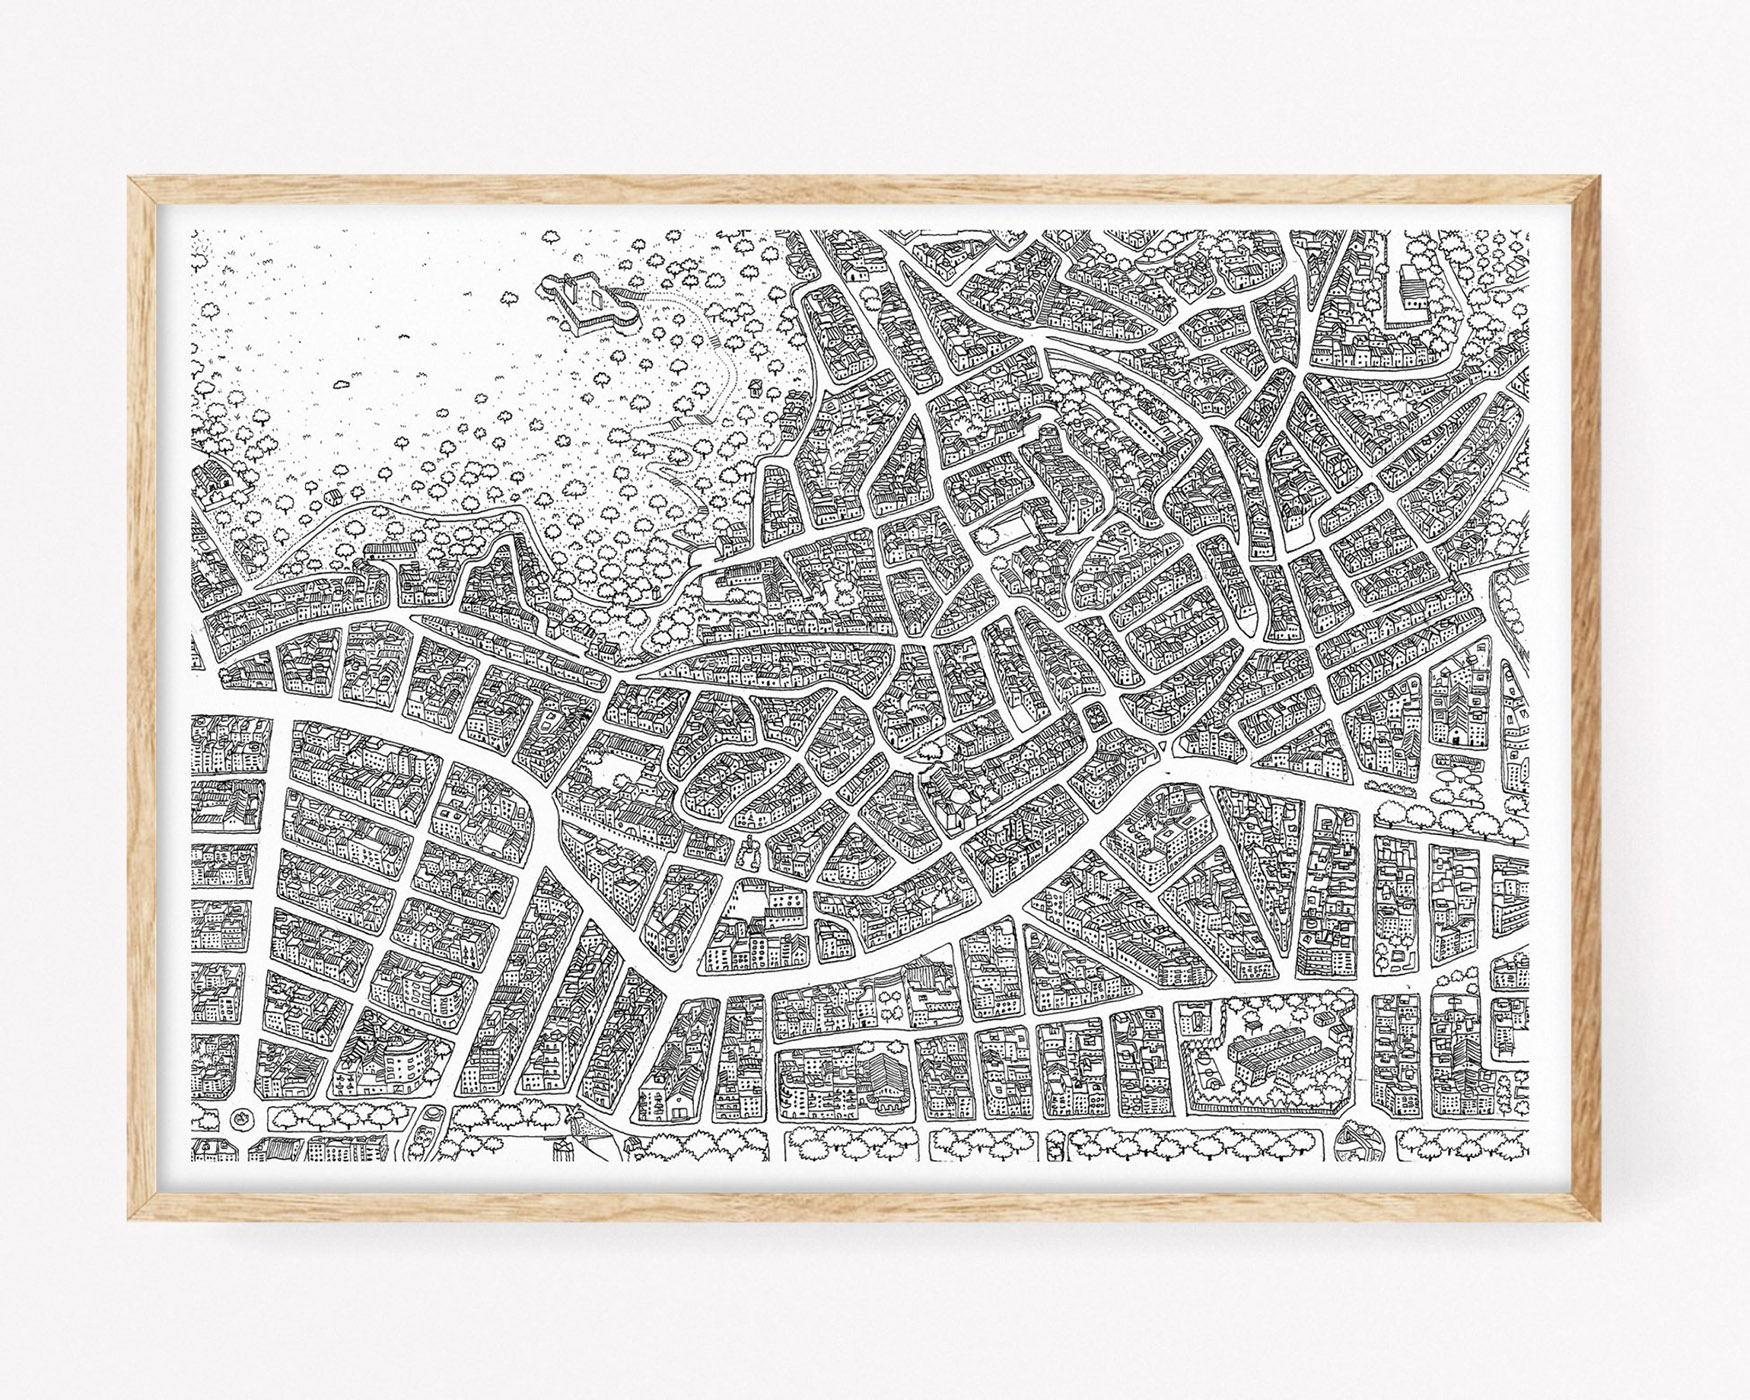 Cuadro para enmarcar con un dibujo de un mapa en blanco y negro del Centro Histórico del pueblo de Oliva. Prints de la Terreta (la Safor)